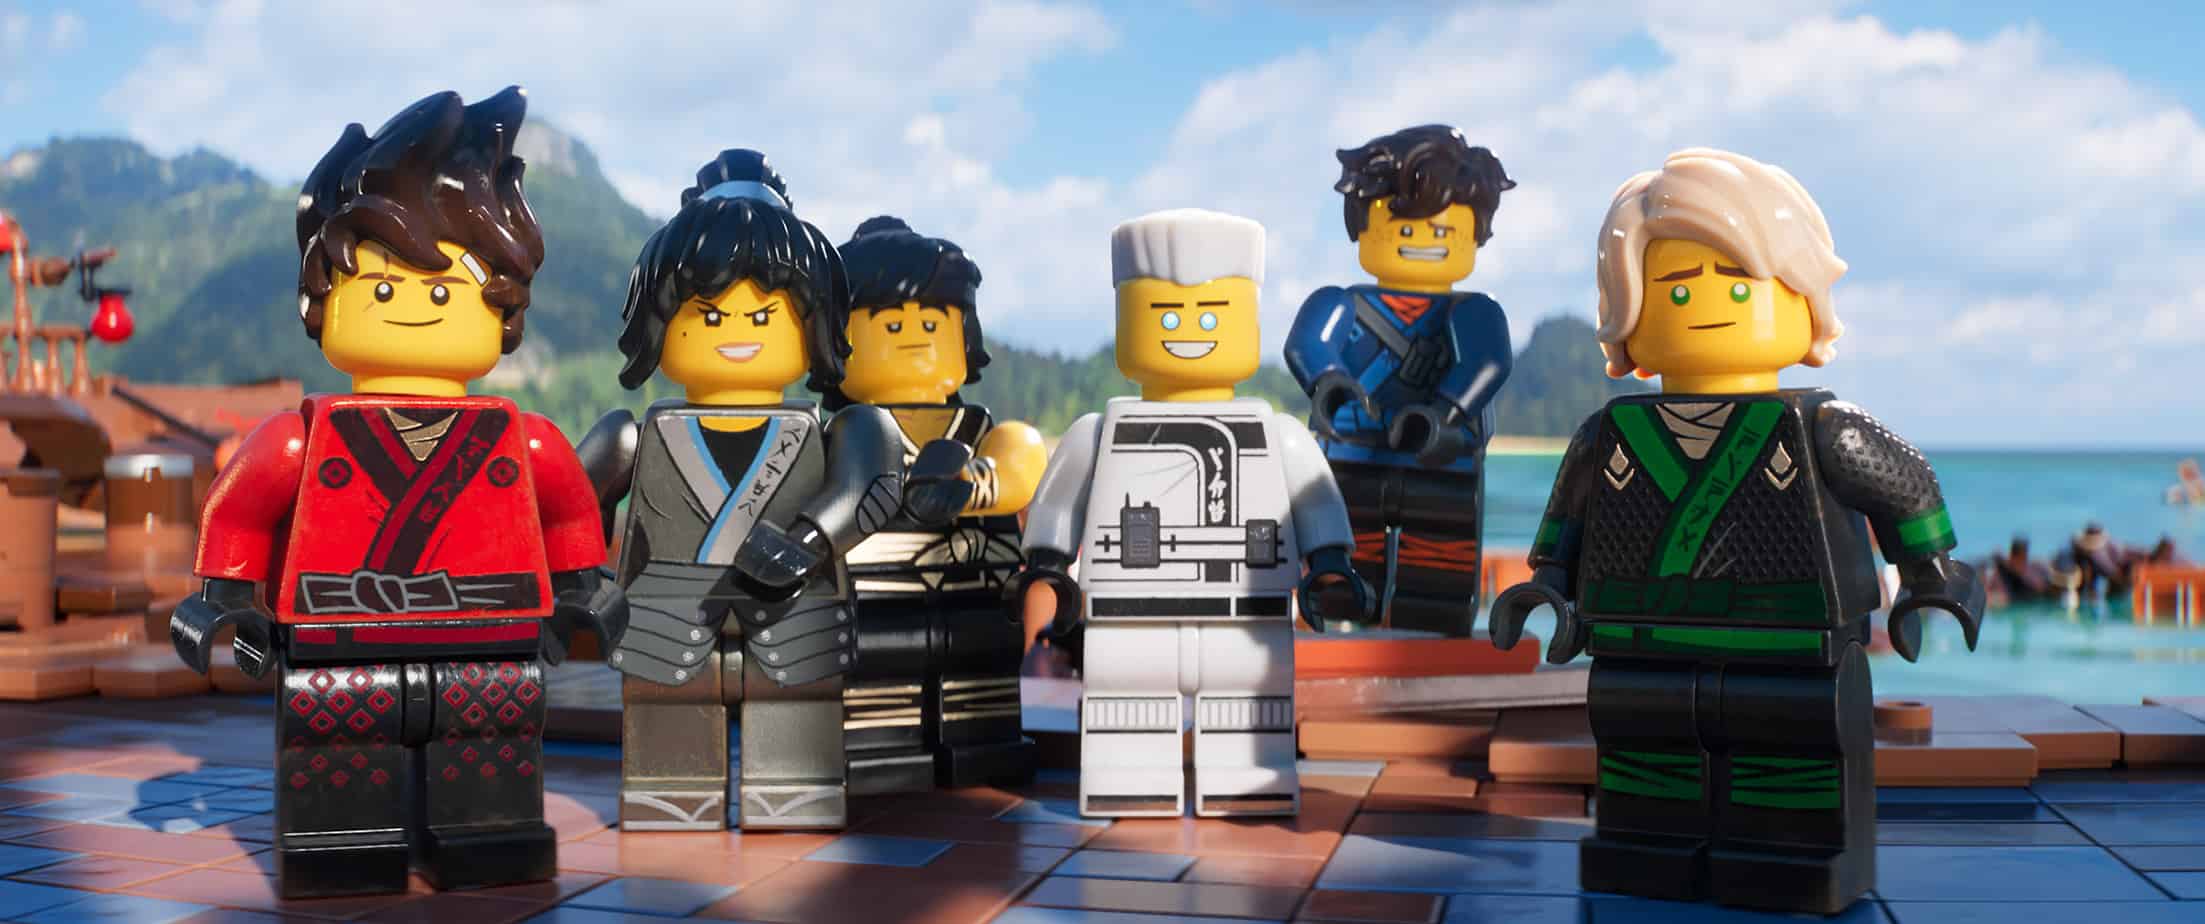 Lego Ninjago Movie Review